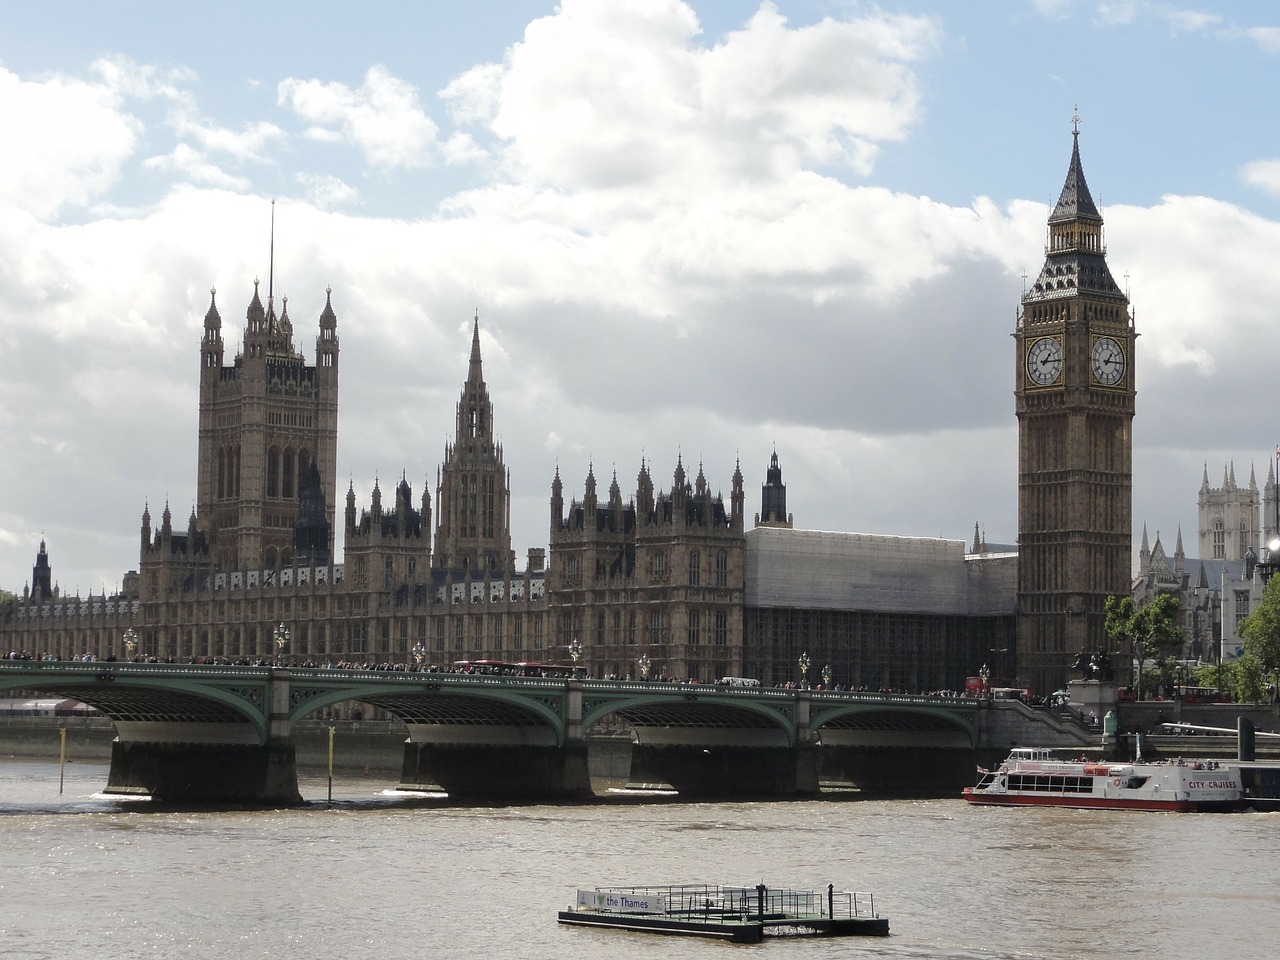 런던은 템즈강을 따라 흘러온다. 비록 물은 우중충해도 강변을 가로 선 수많은 건축과 조형물들 그리고 휴식공간은 시민의 국가임을 잘 나타내고 있다. 